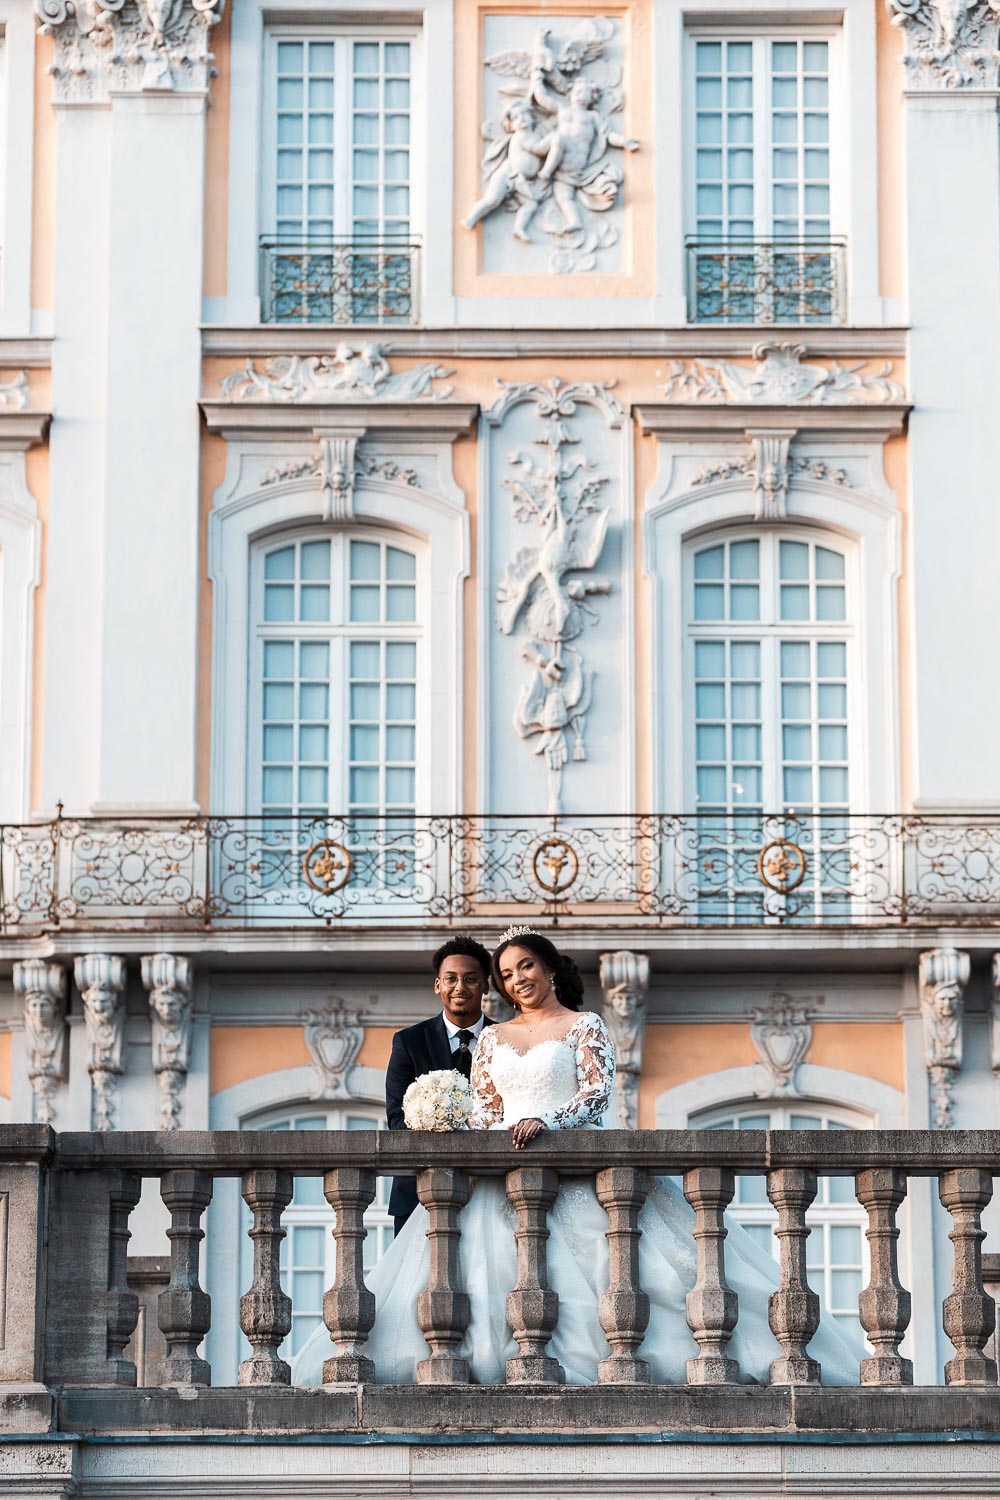 Brautpaar posiert für das Hochzeitsshooting am Schloss Augustusburg in Brühl auf der Terrasse. Die halb afrikanische Braut hält den Brautstrauß mit weißen Rosen in der Hand und legt es auf die Brüstung ab. In dieser Perspektive ist die Barockfassade des Schlosses leicht verschwommen im Hintergrund gut zu sehen.